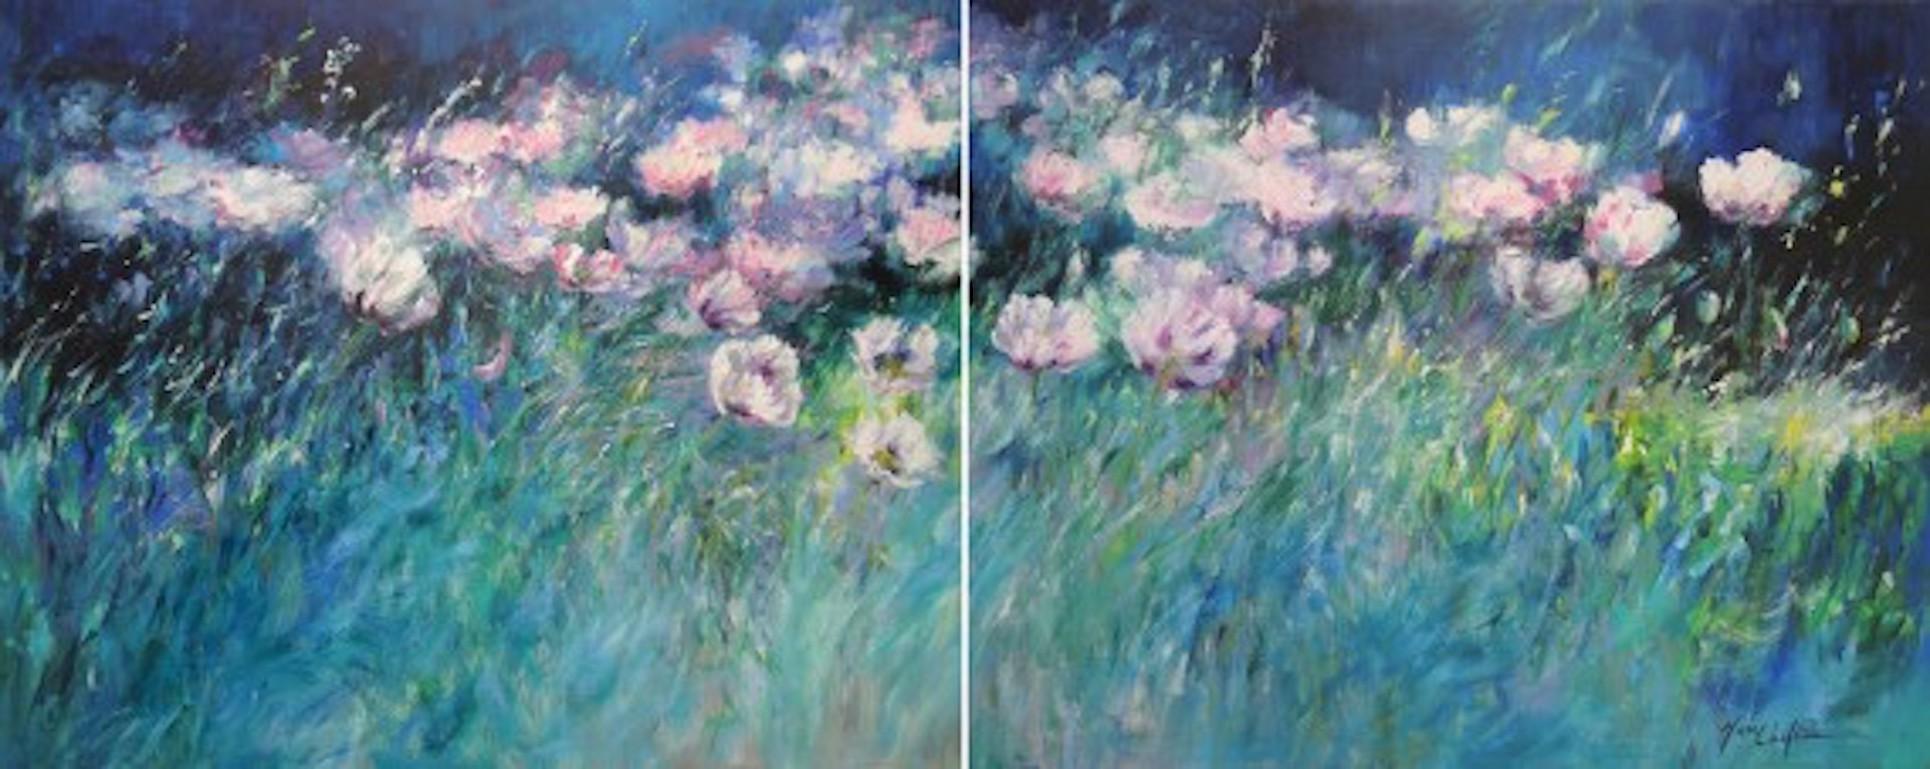 Breeze de soirée, Mary Chaplin, peinture florale originale de paysage, art abordable